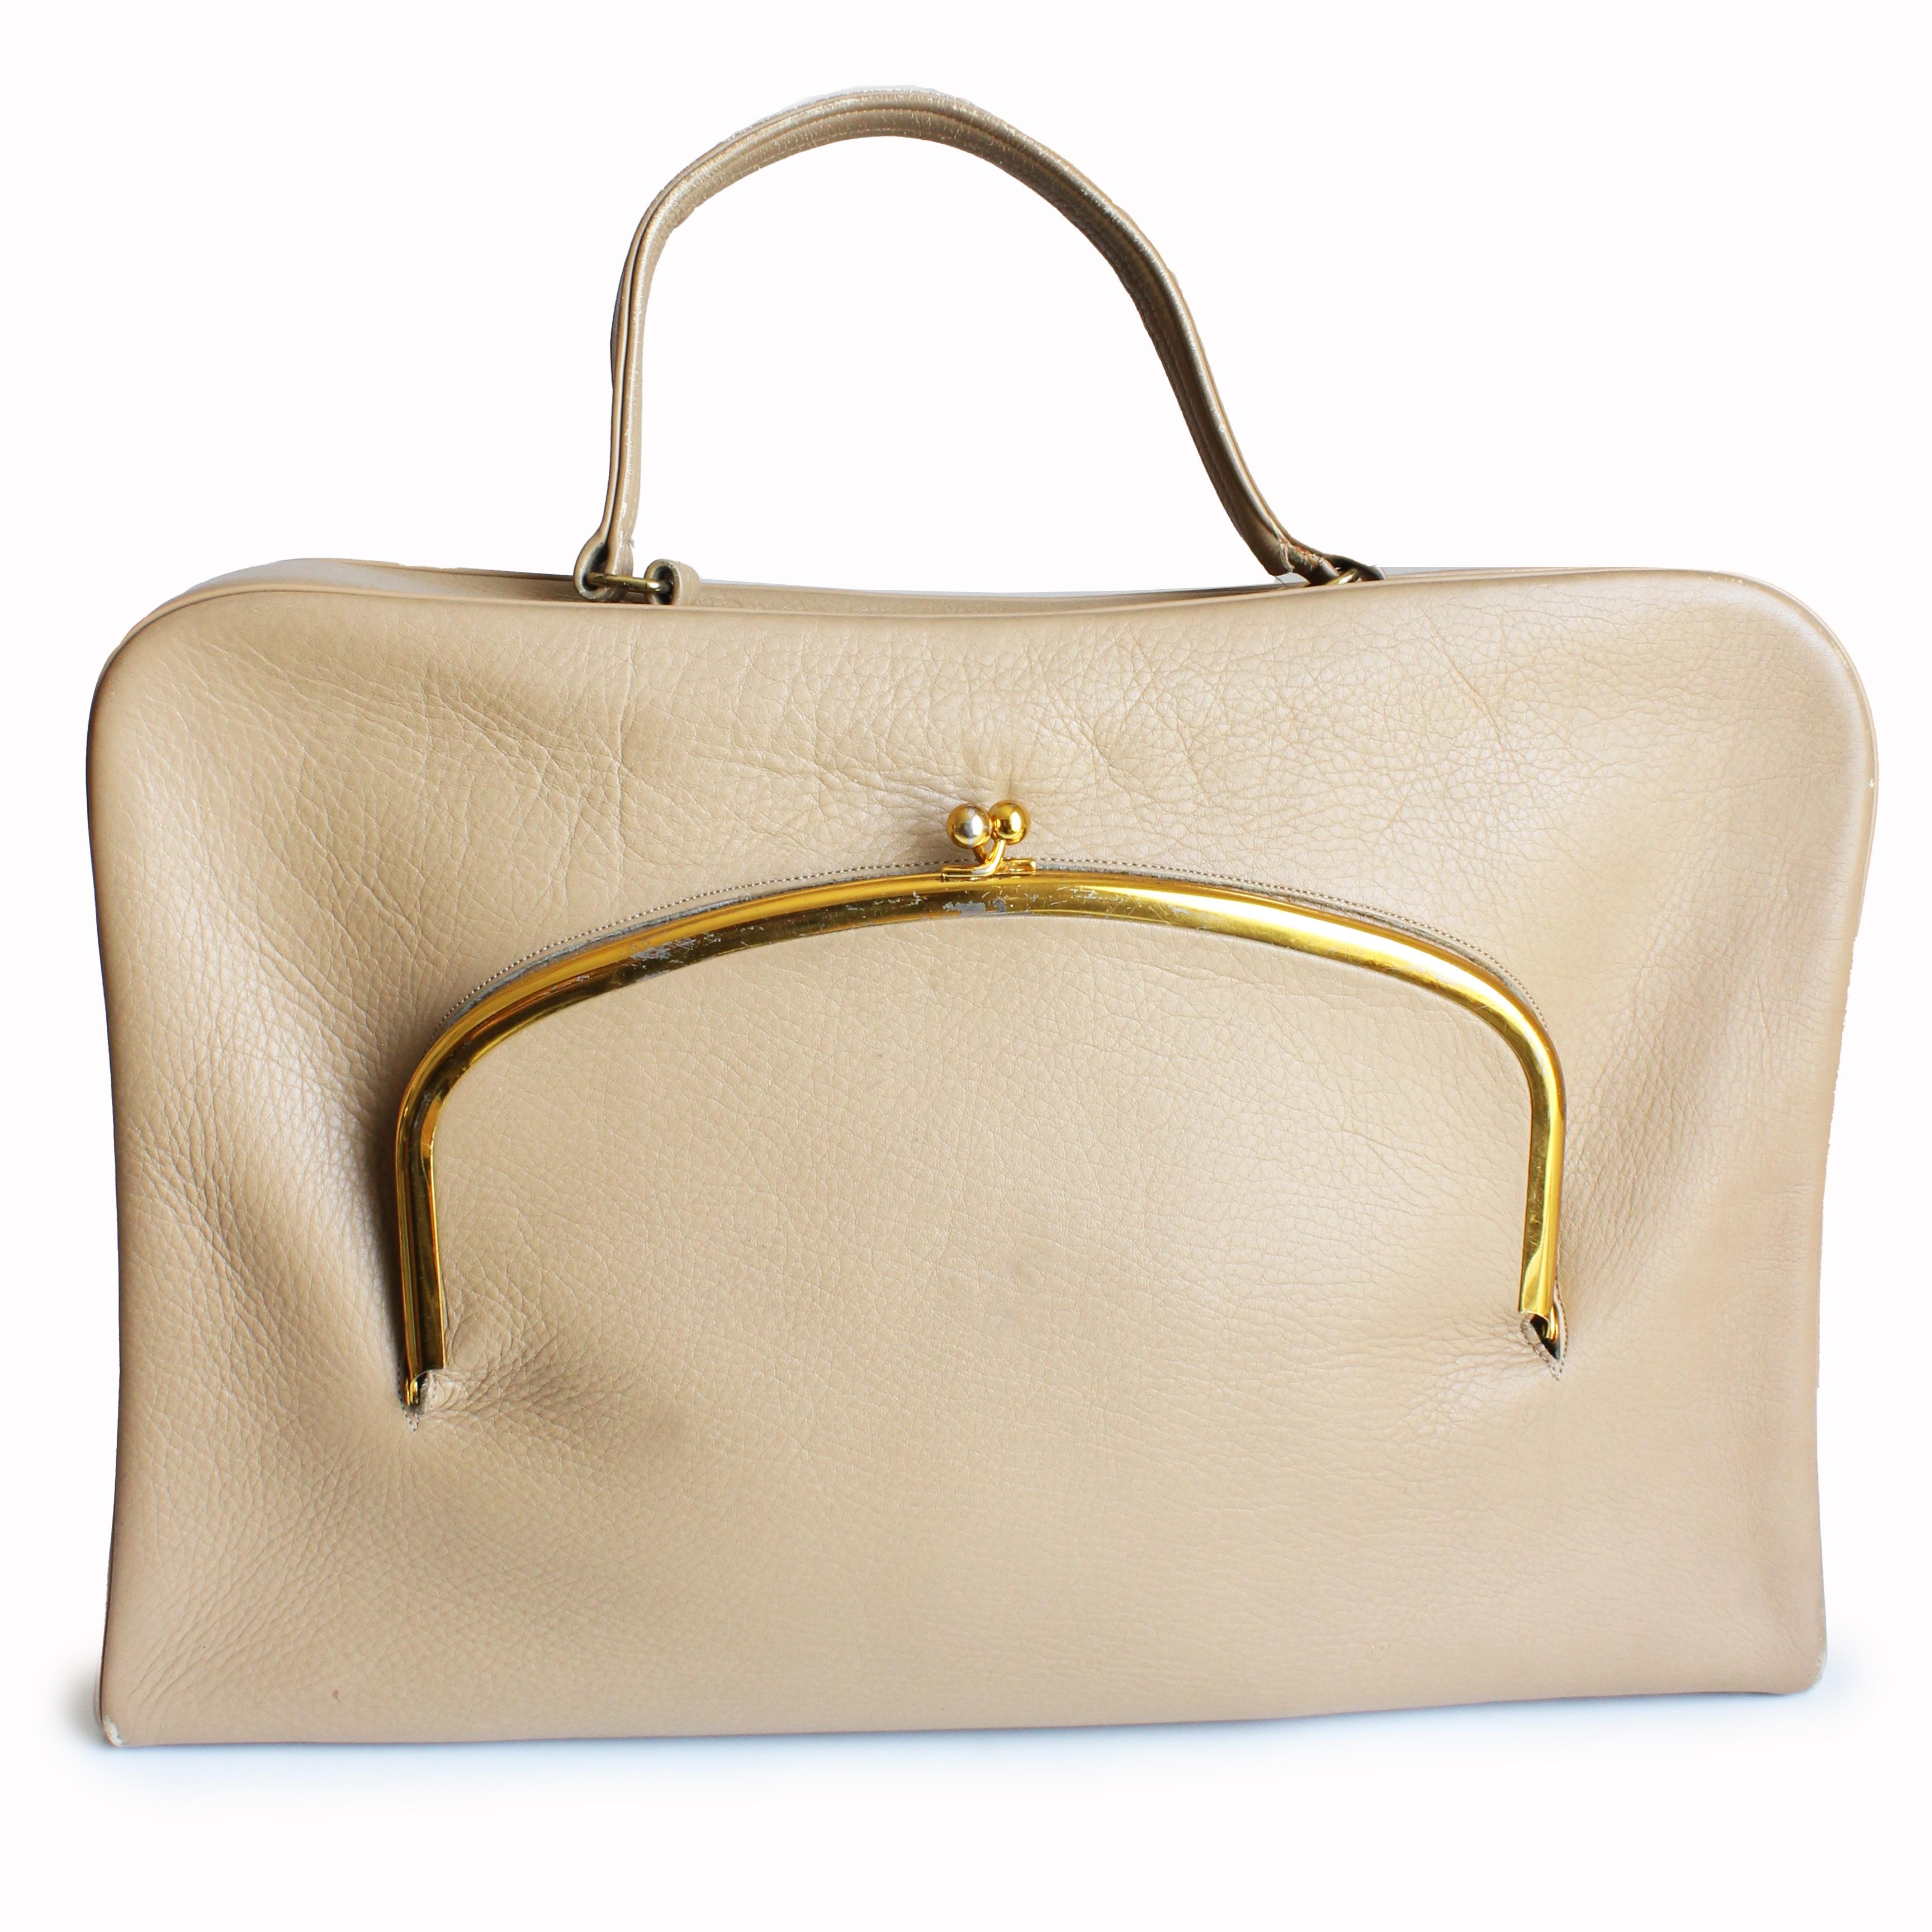 Authentique, d'occasion, vintage Bonnie Cashin for Coach 'Cashin Carry' Attache Briefcase bag, probablement fabriqué au début des années 1960. 

Confectionné en cuir fauve, ce sac d'affaires chic est doté d'une pochette surdimensionnée à fermeture à